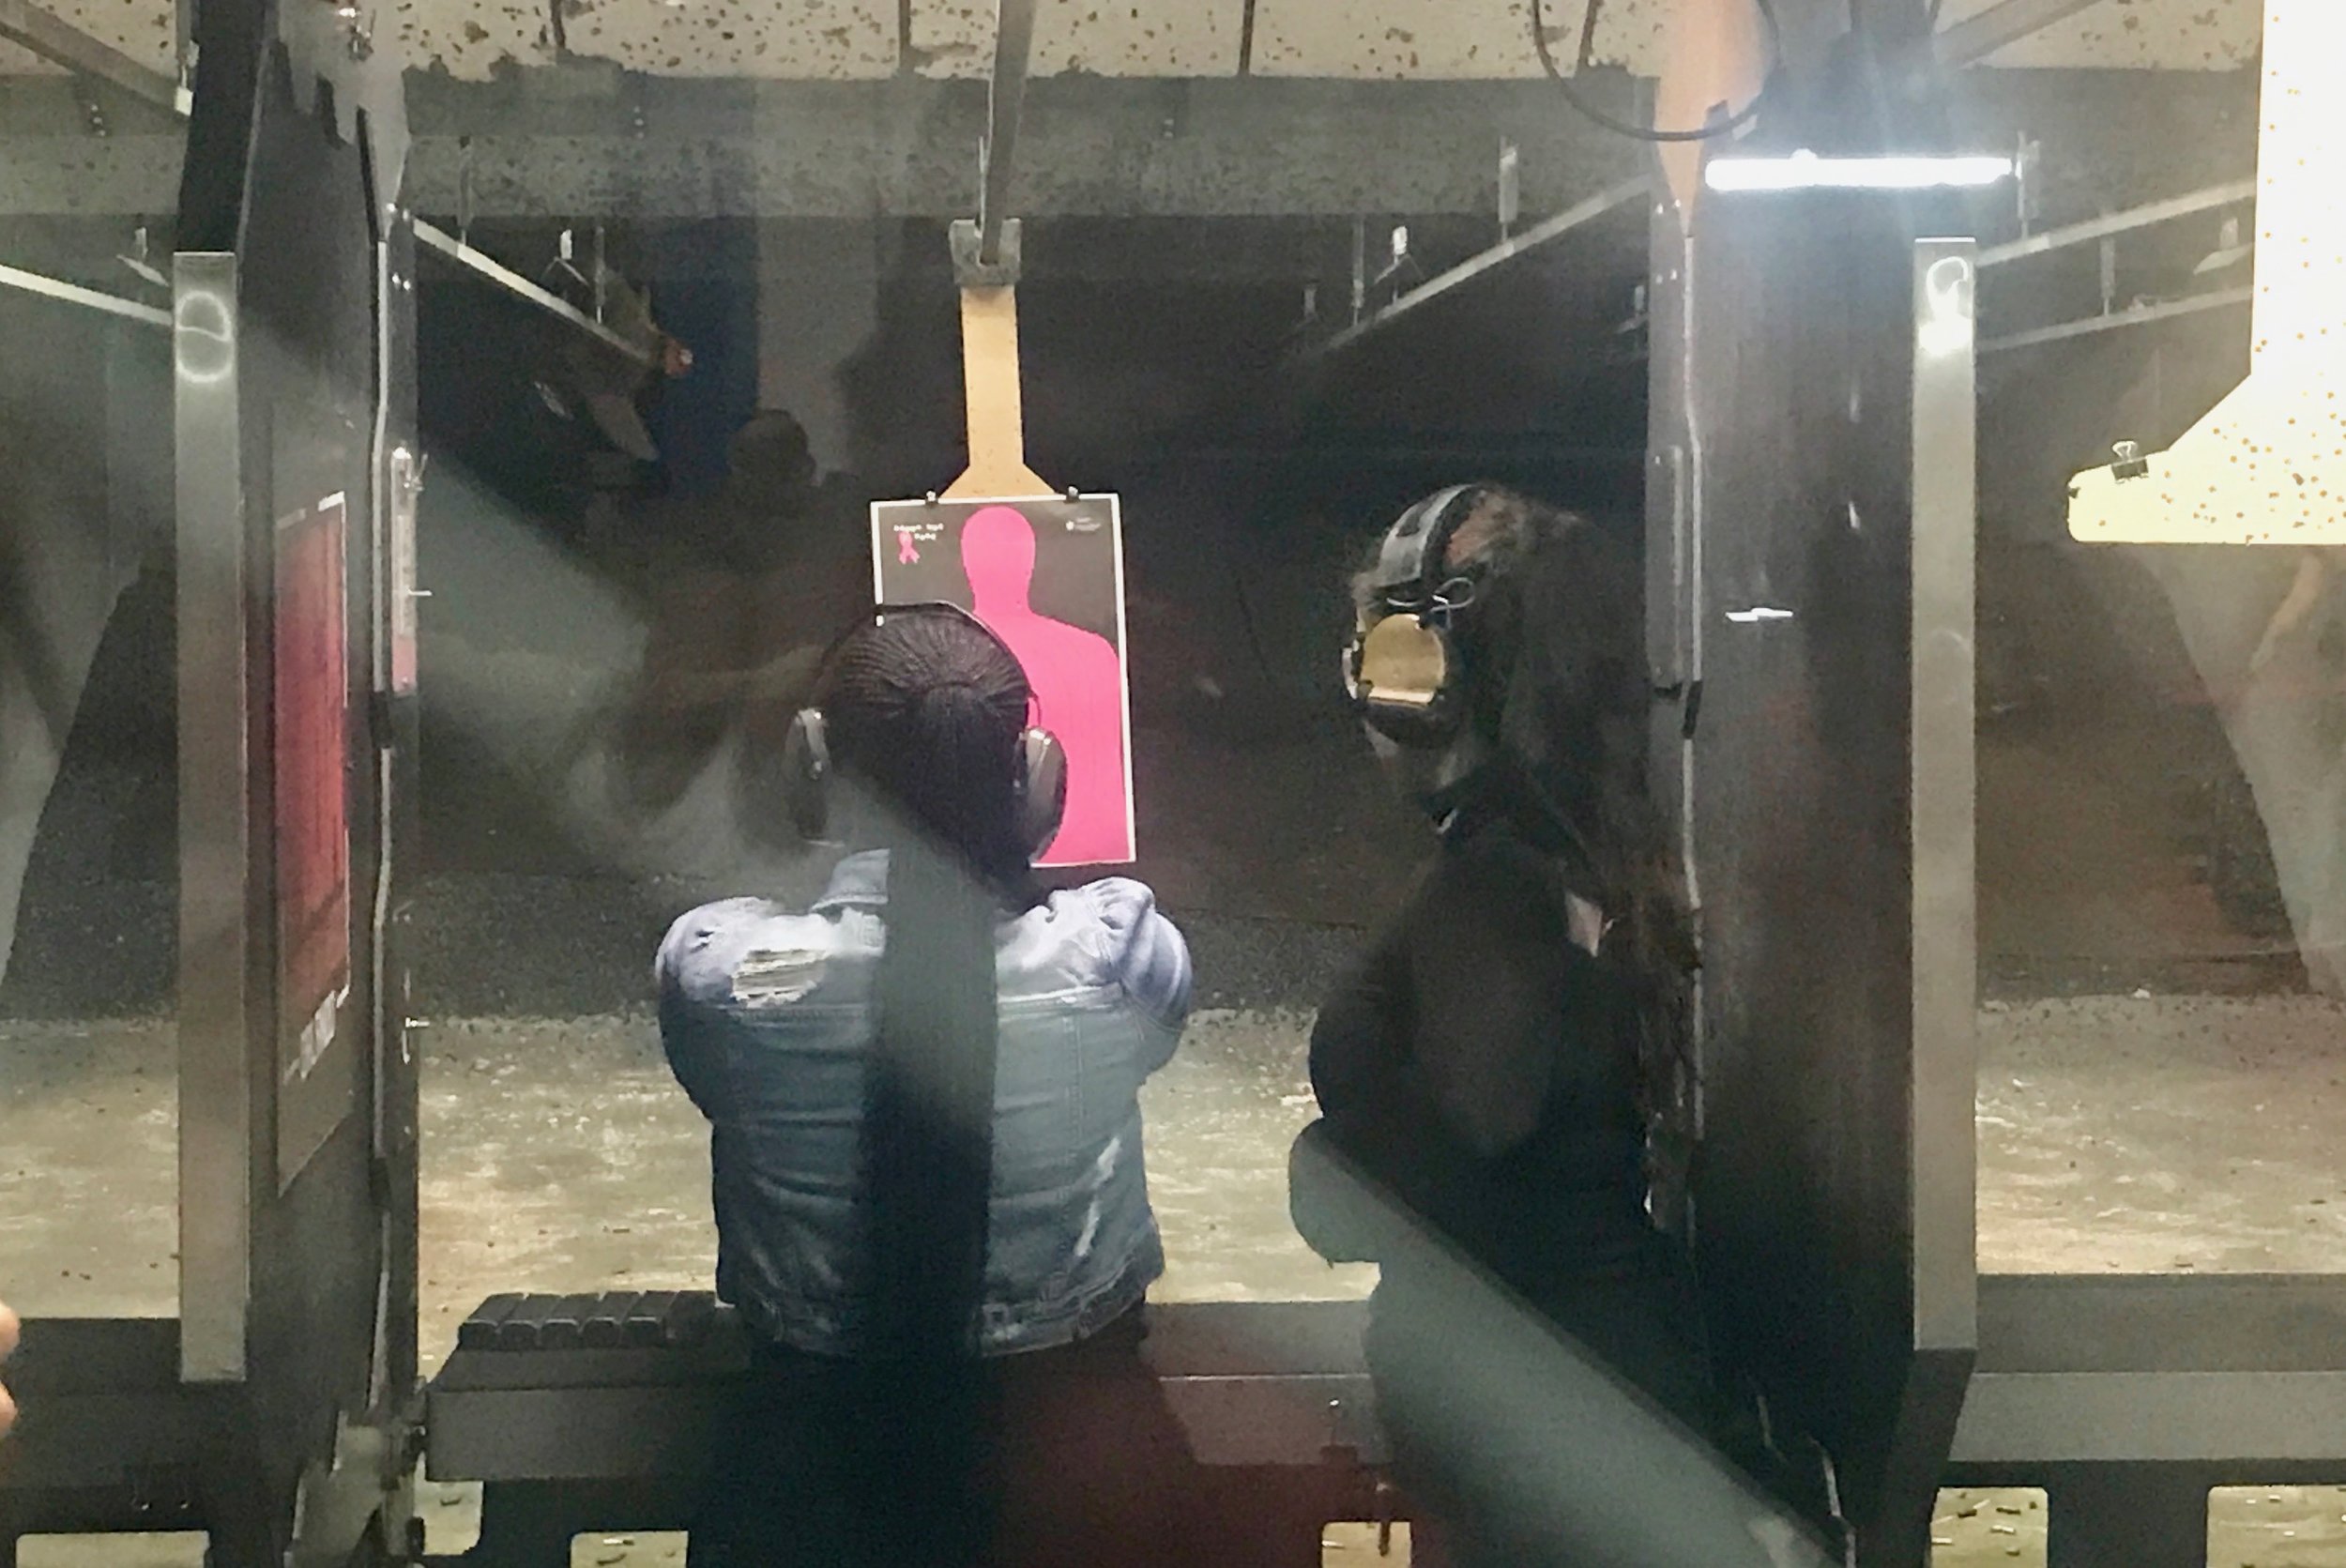  A customer lines up a shot at Machine Gun America.      